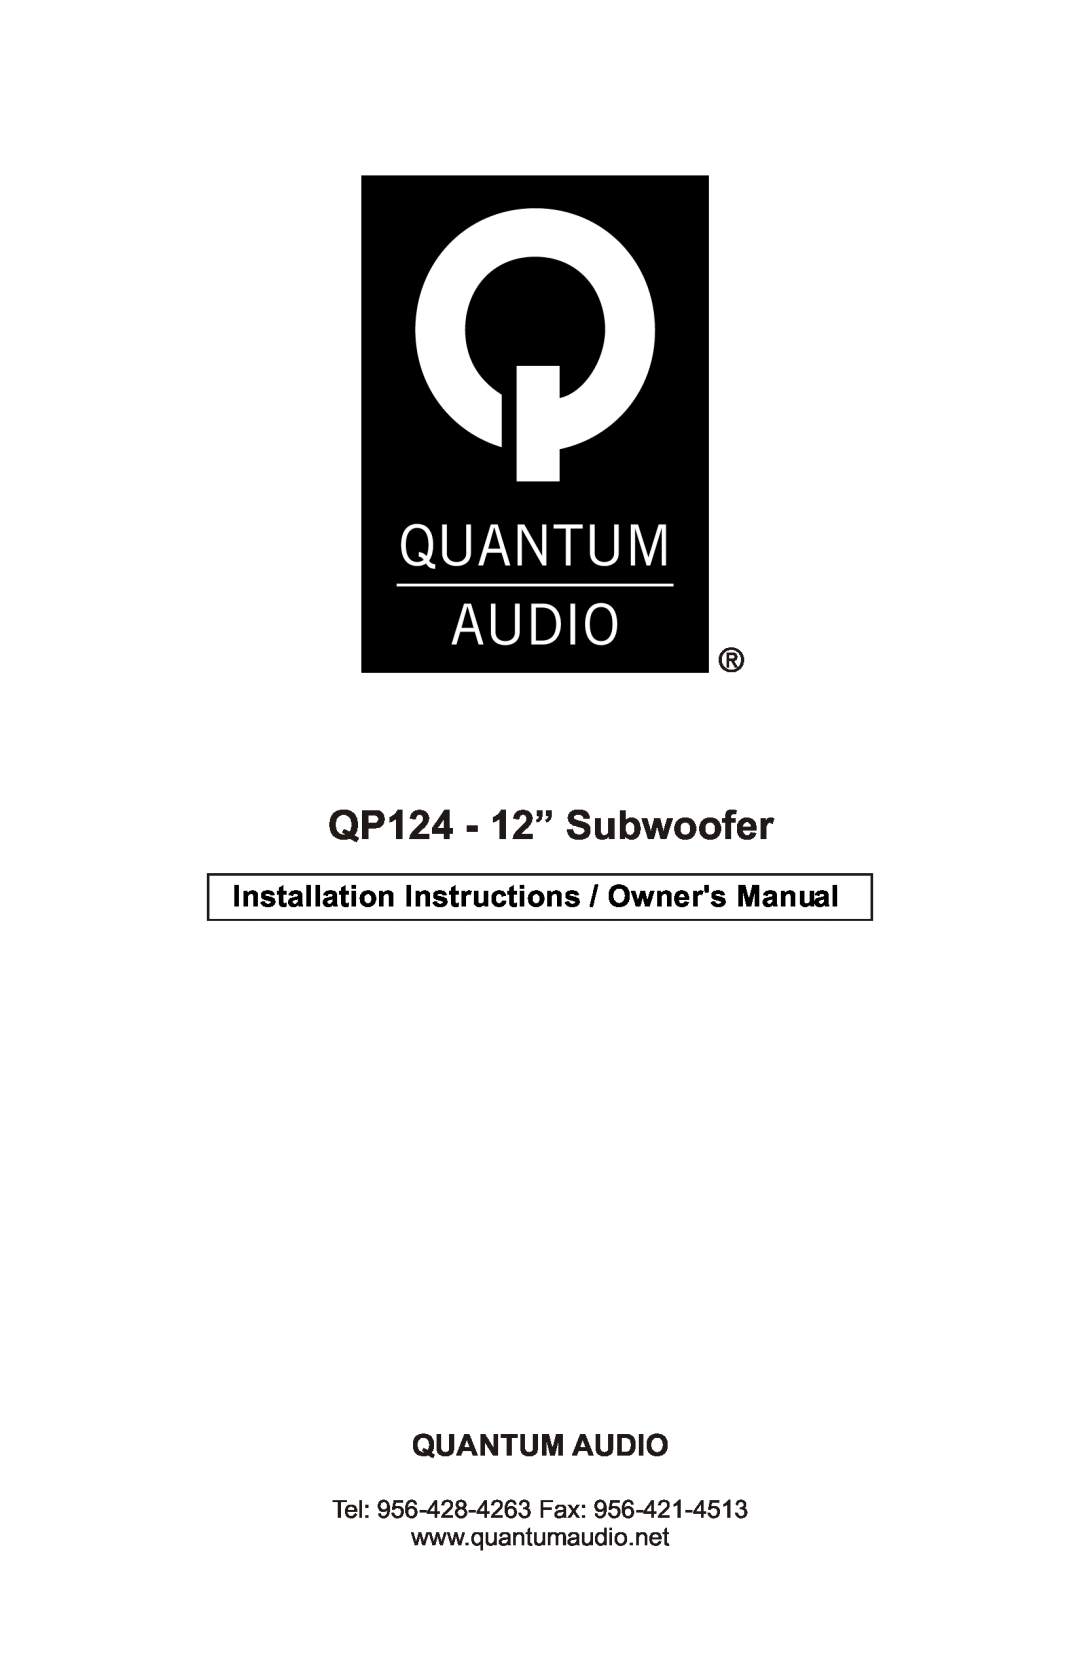 Quantum Audio installation instructions QP124 - 12” Subwoofer, Quantum Audio 